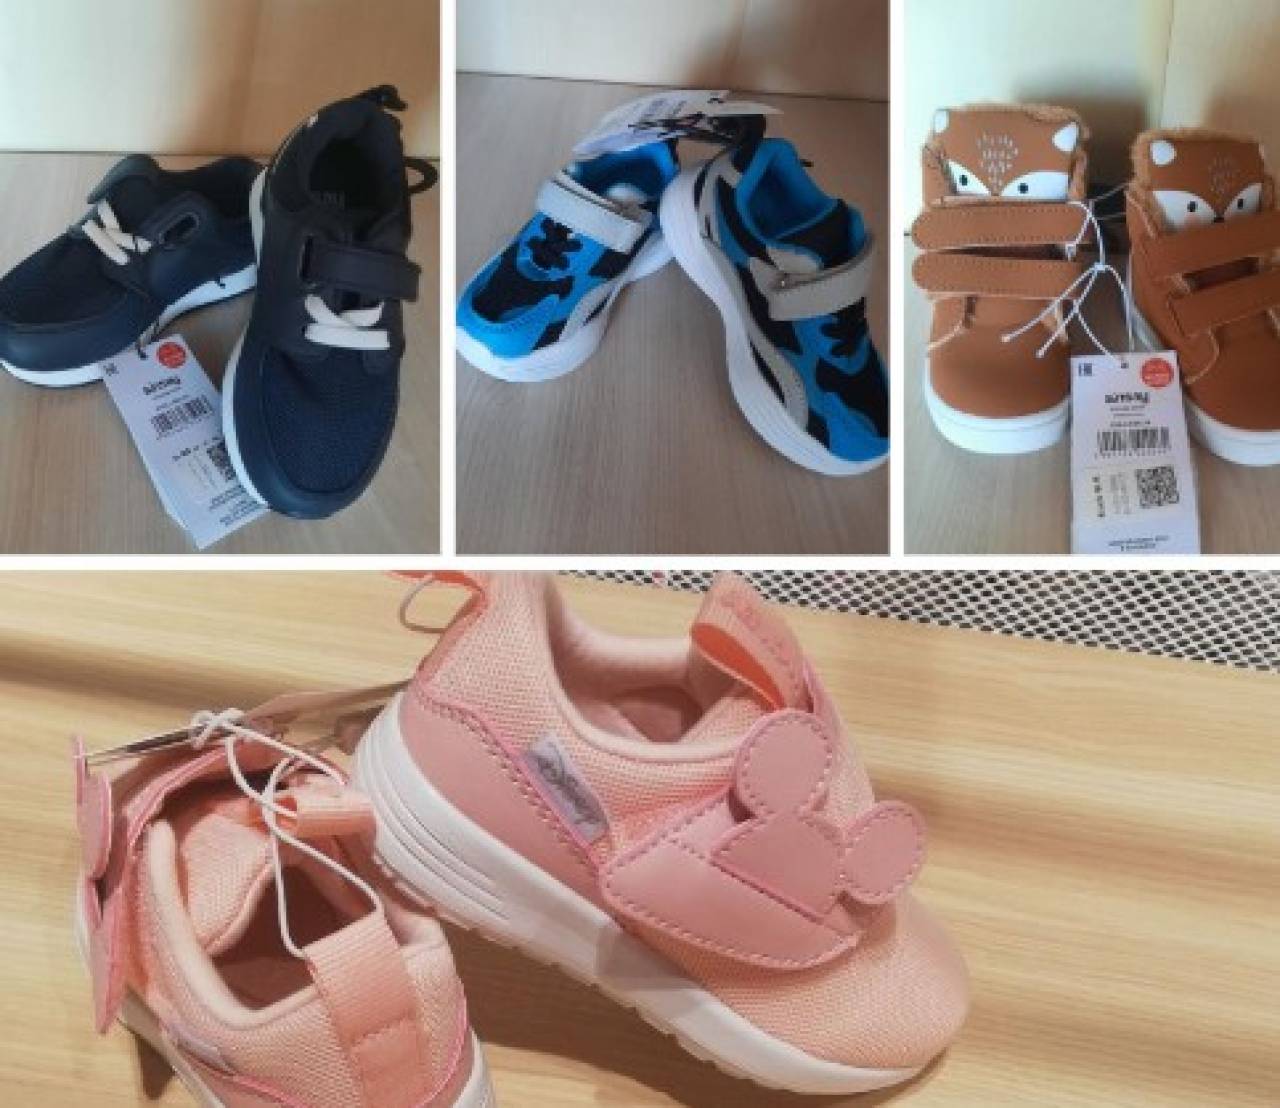 Из белорусских магазинов изъяли ряд моделей детской обуви и одежды популярного польского бренда Sinsay